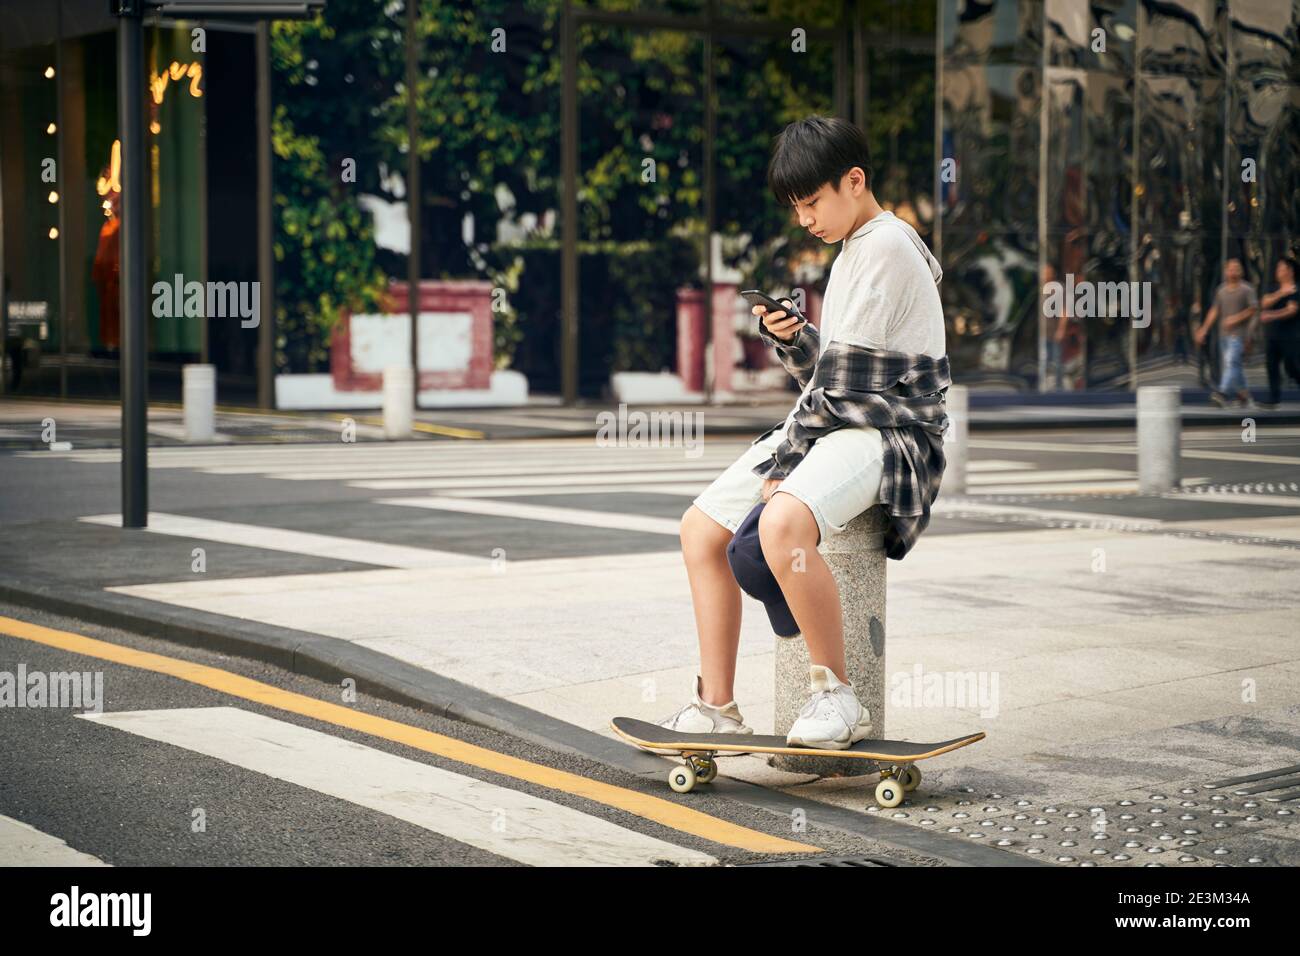 adolescent asiatique skateboarder enfant regardant le téléphone mobile pendant qu'il se repose Banque D'Images